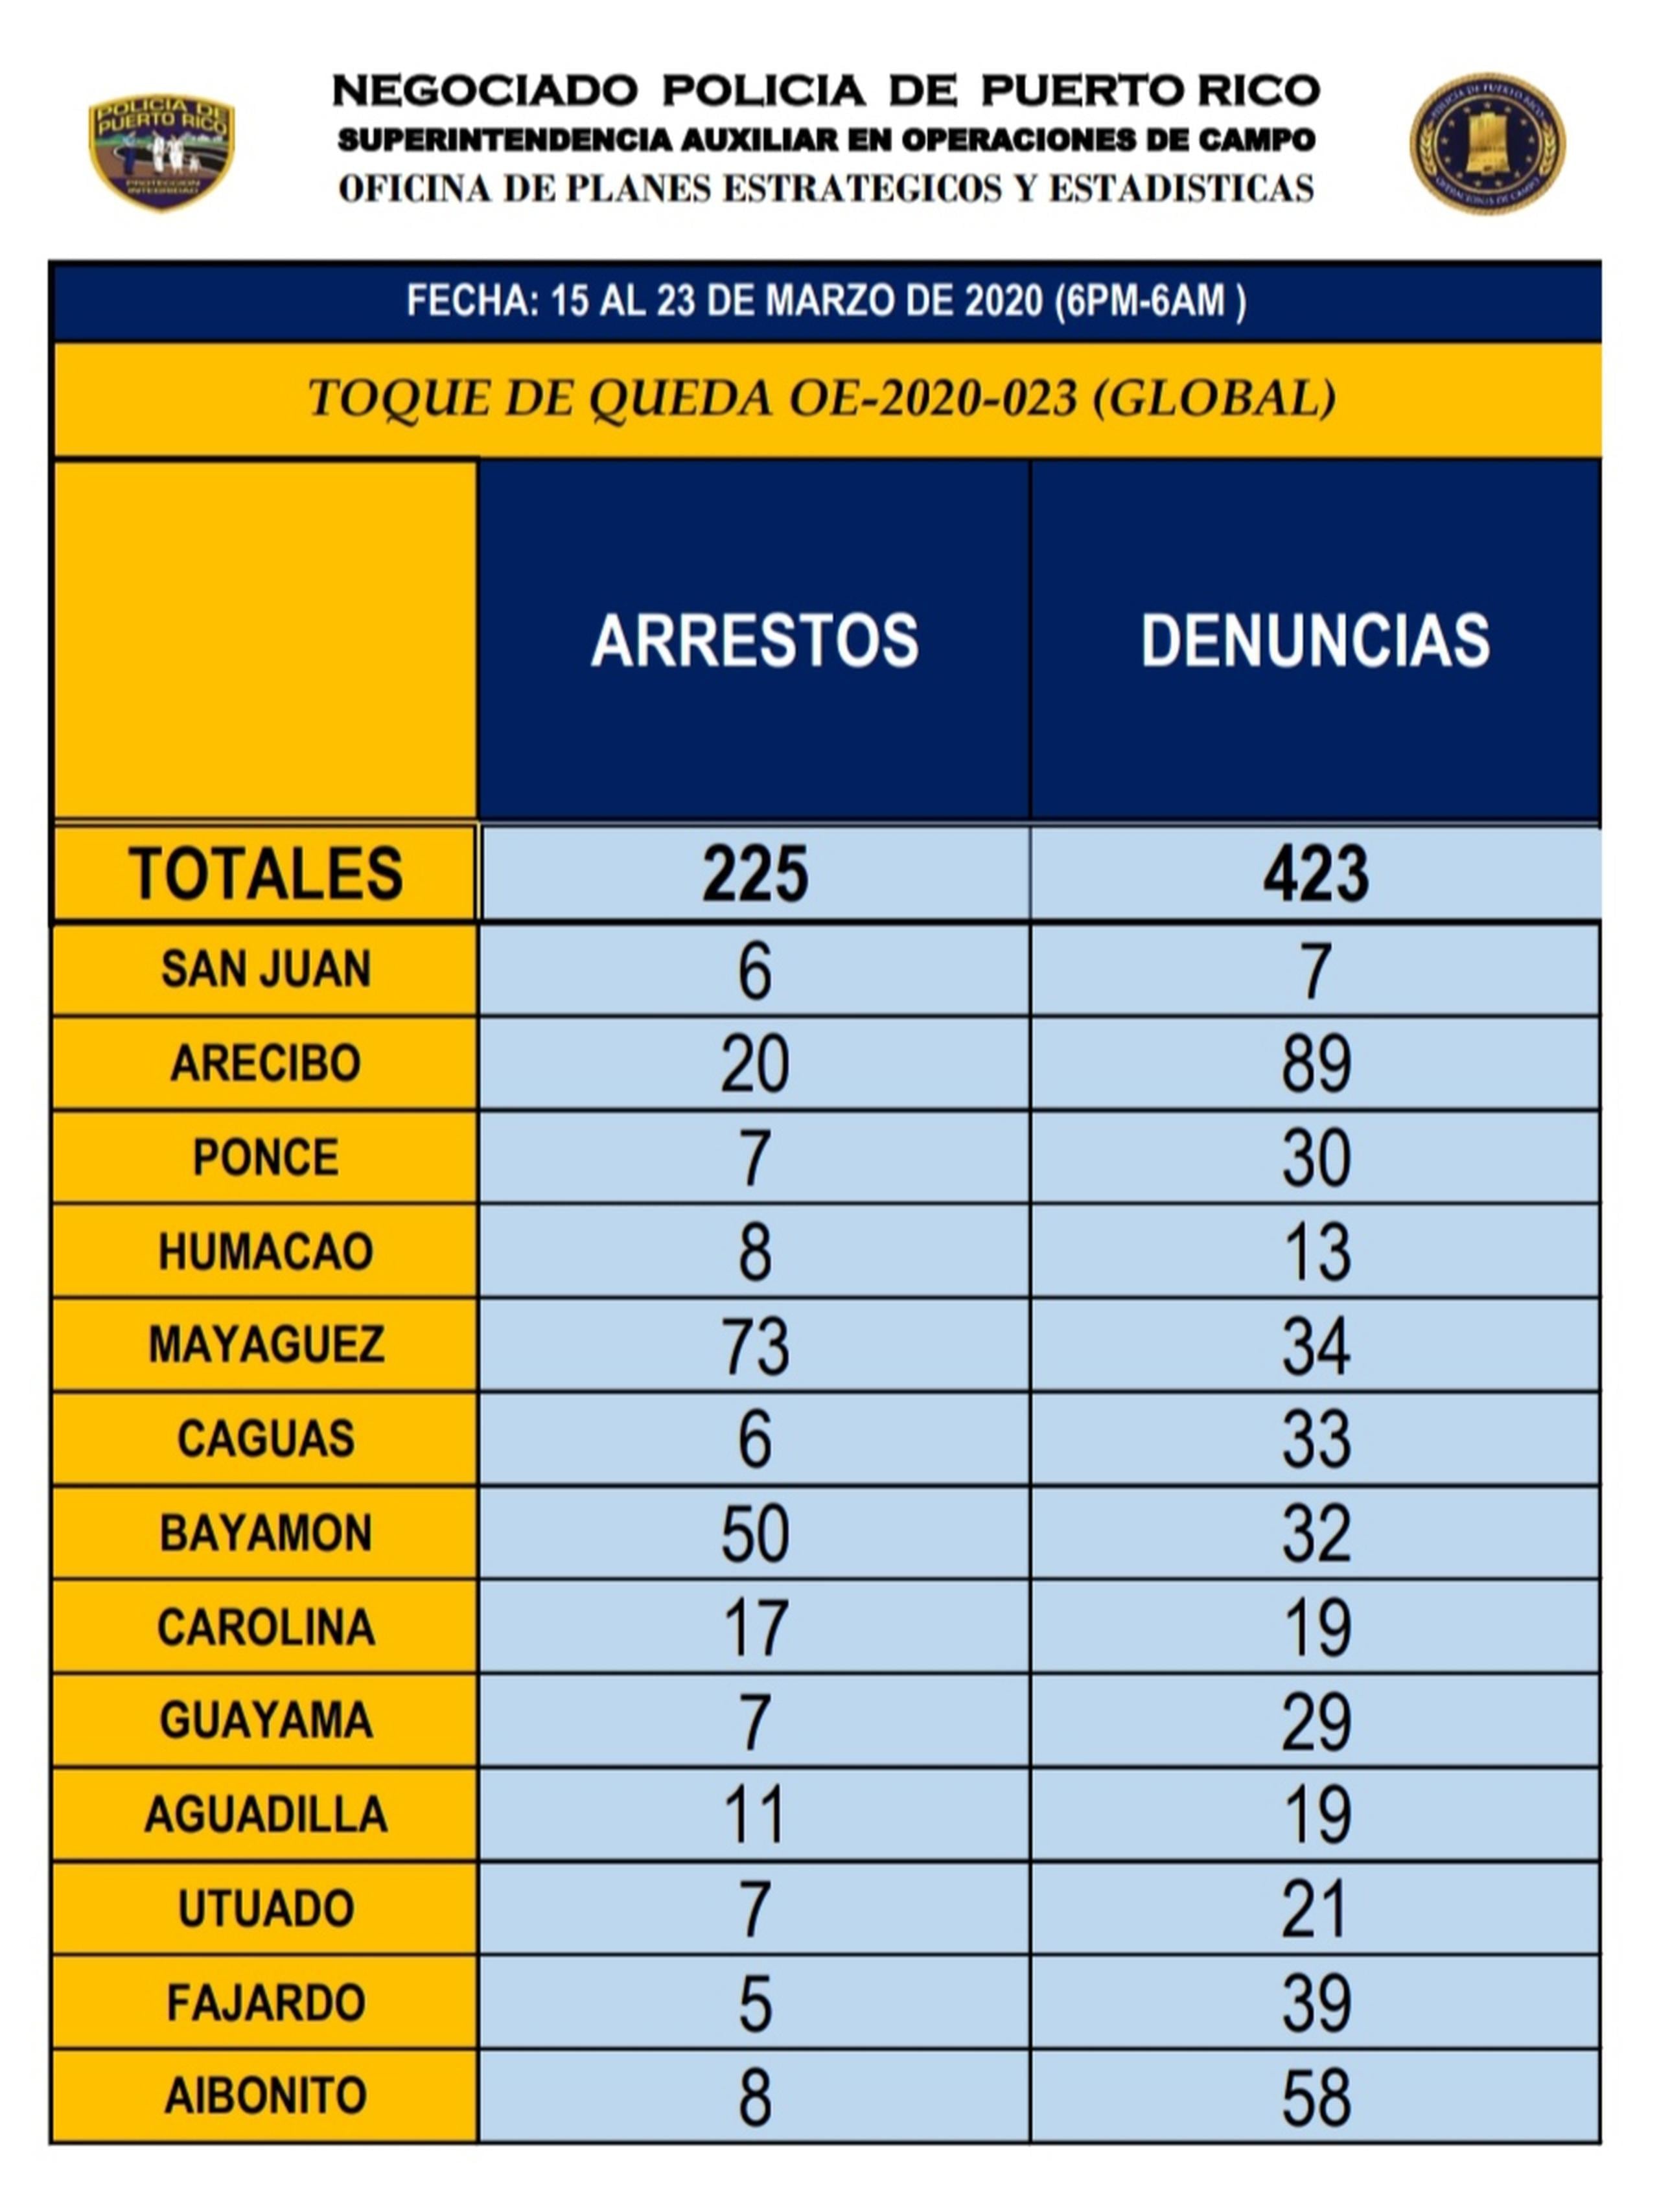 Desde que comenzó el toque de queda el pasado 15 de marzo se han arrestado 225 personas y se le expidieron denuncias a 423 personas